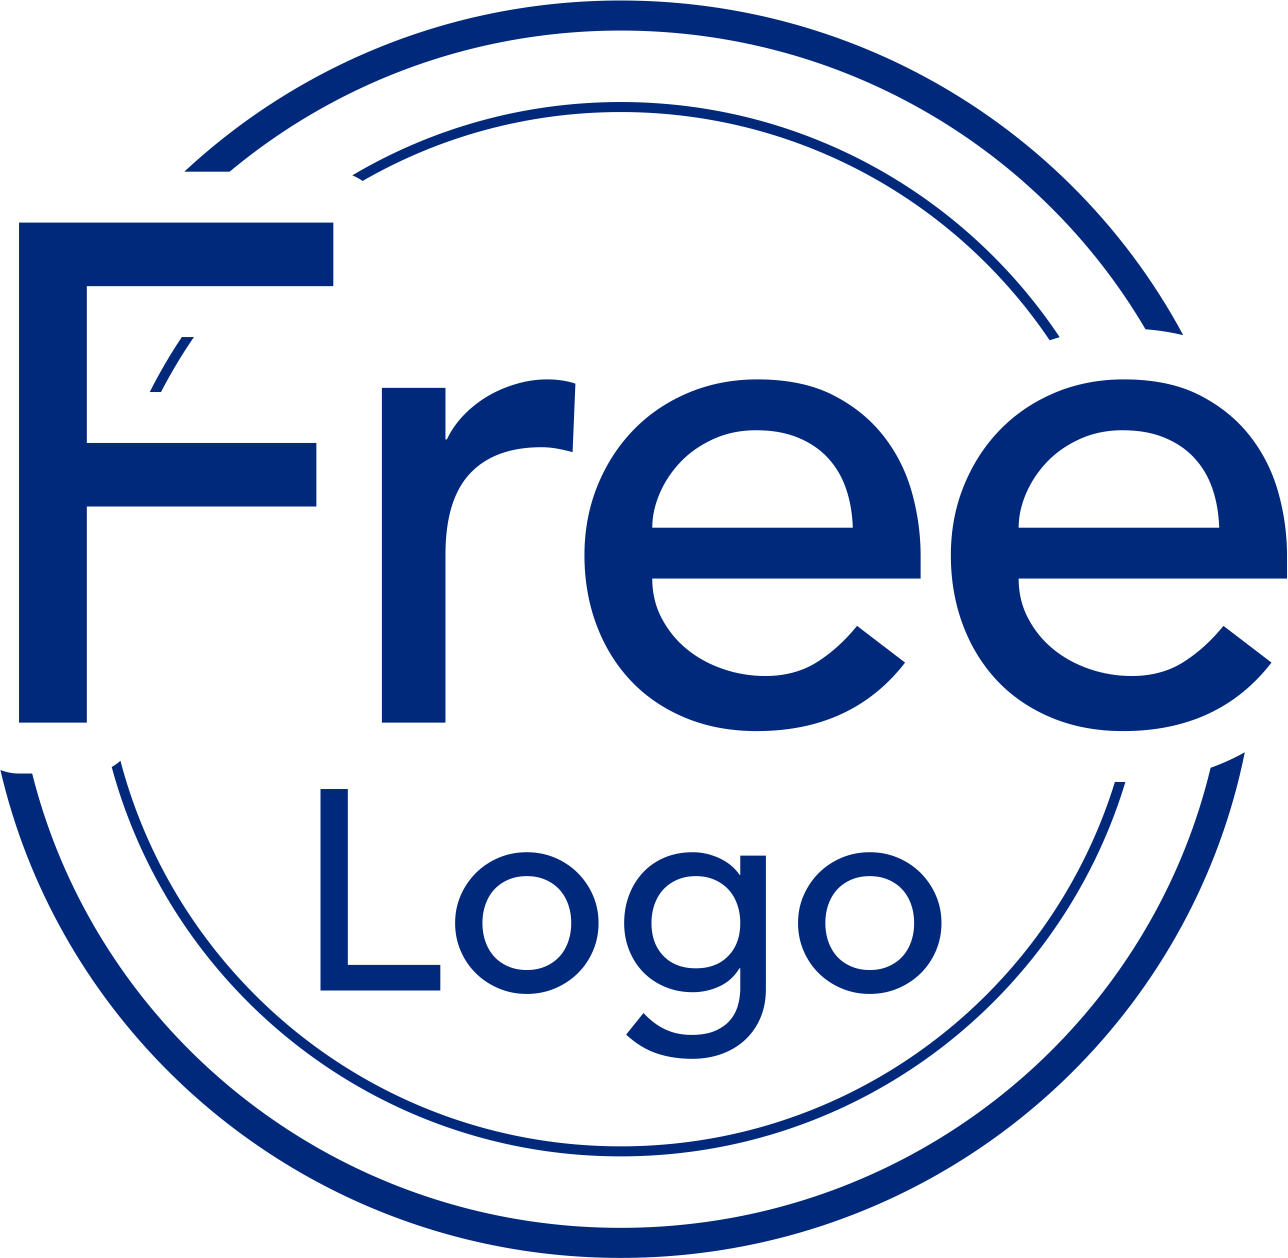 Free Logo